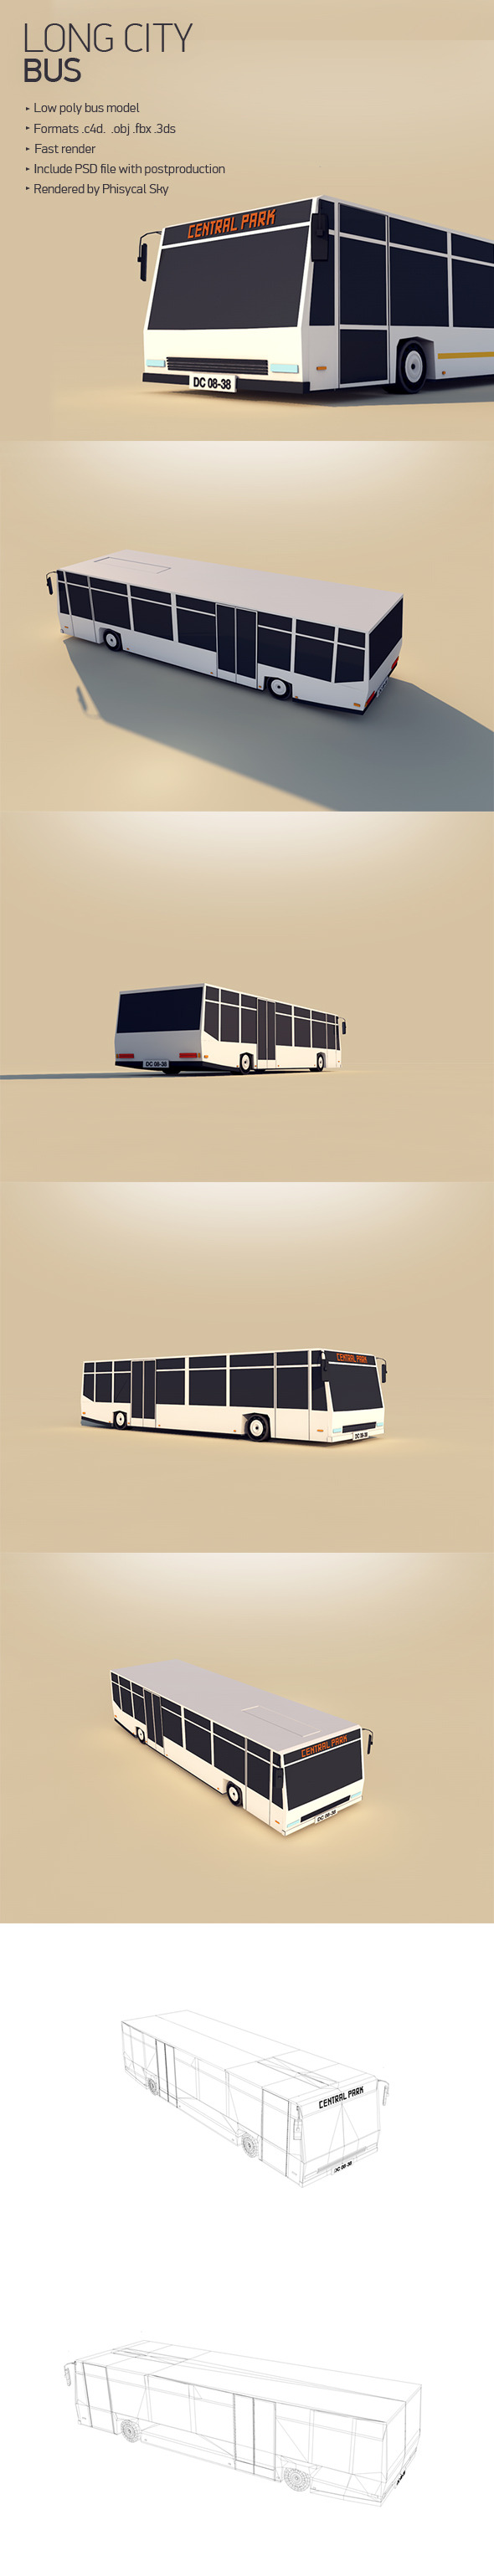 Long City Bus